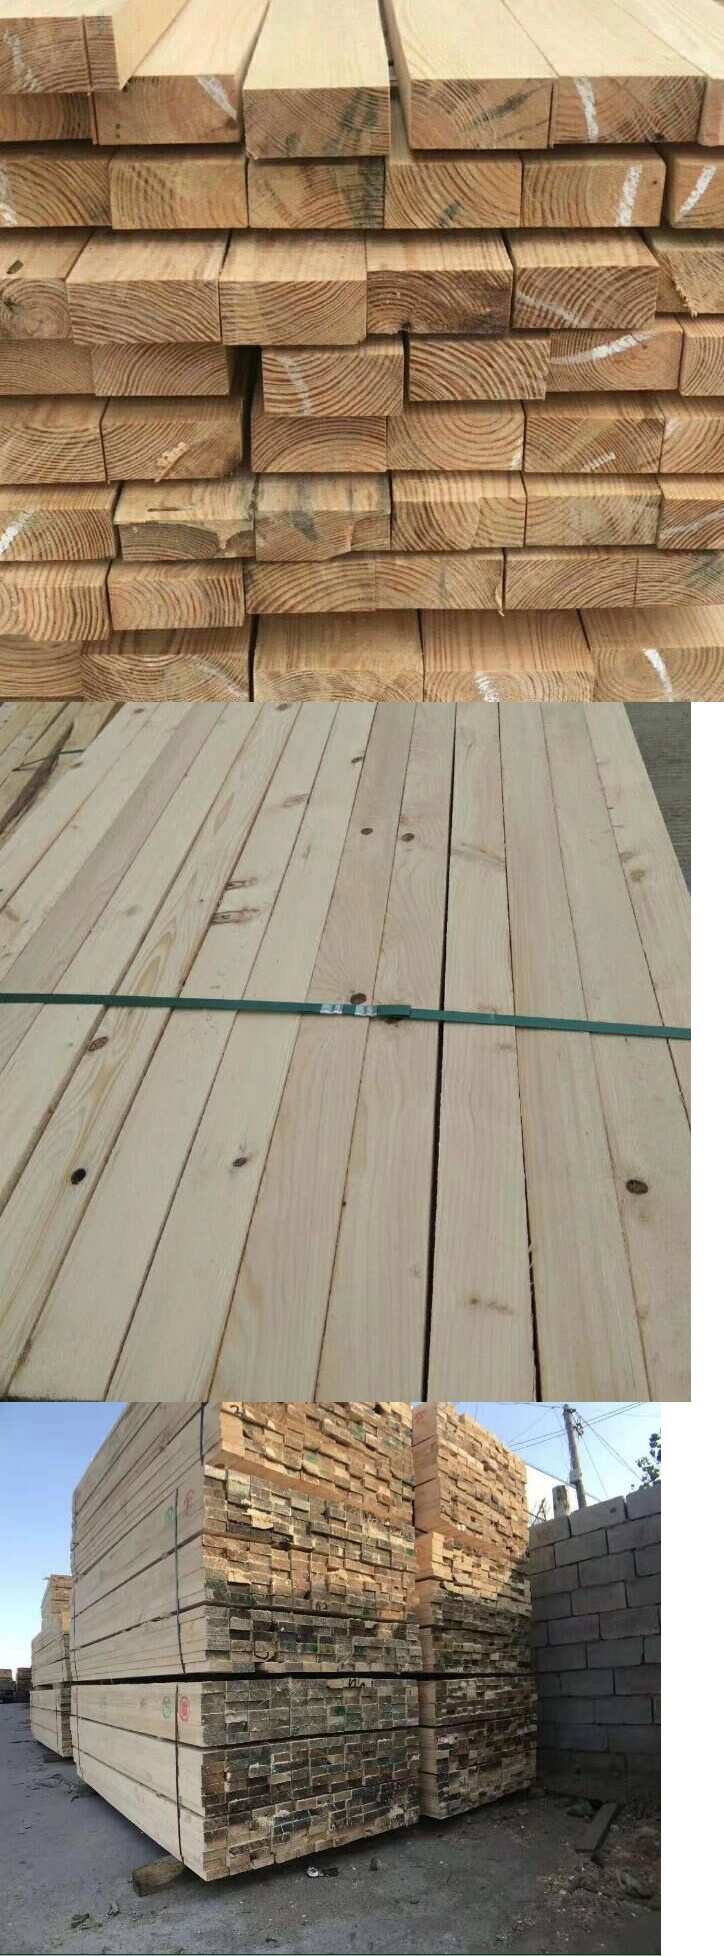 木方条4*3规格4米木方建筑用3米4米建材木材定制原木工地木条材料定制